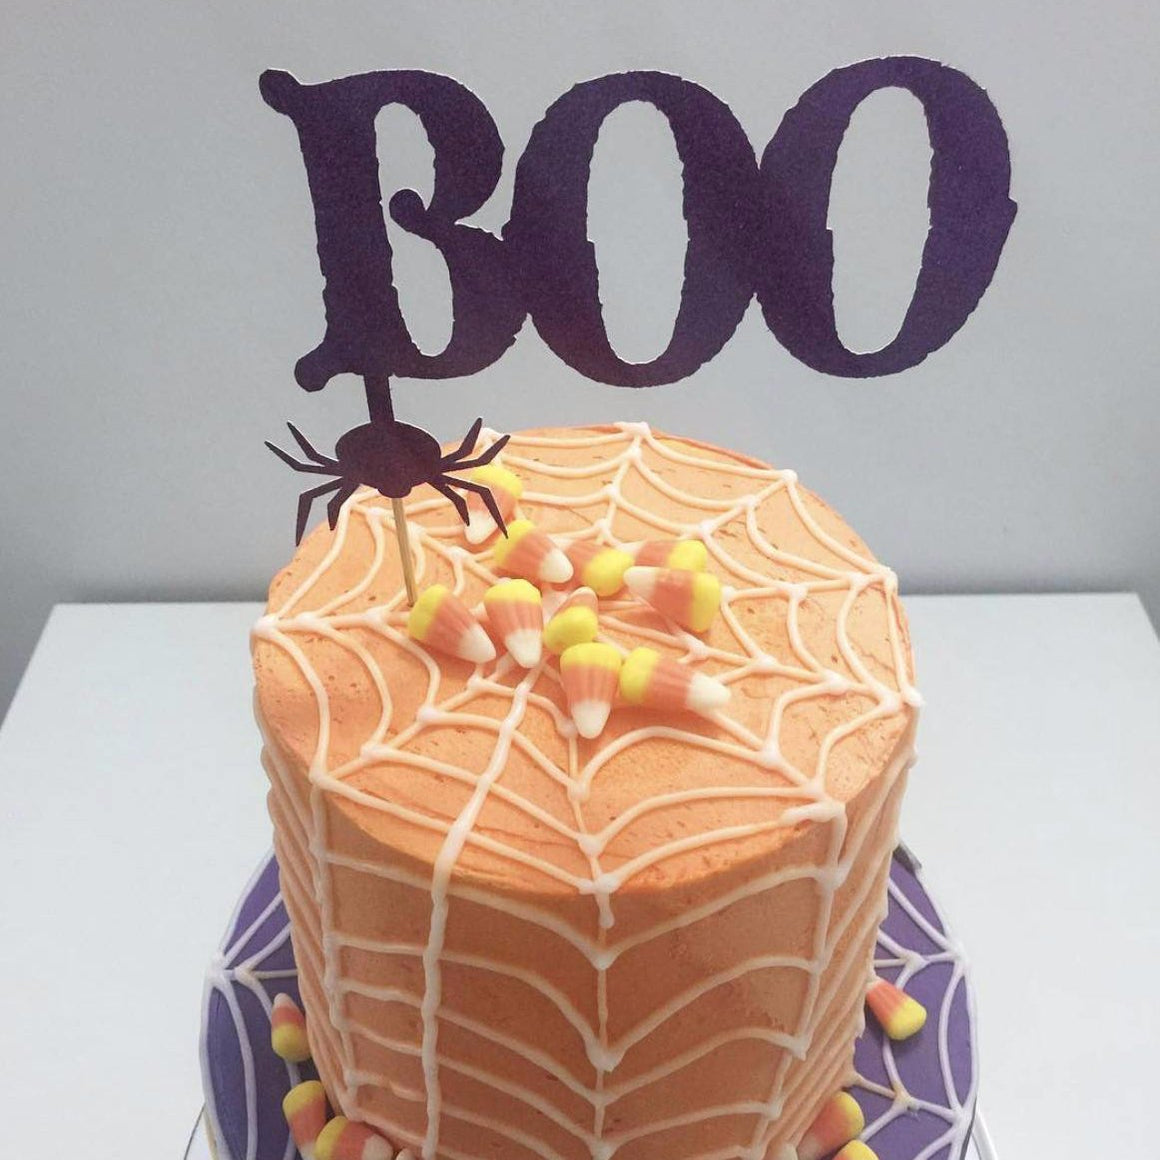 Boo black spider cake topper on orange and purple spiderweb cake